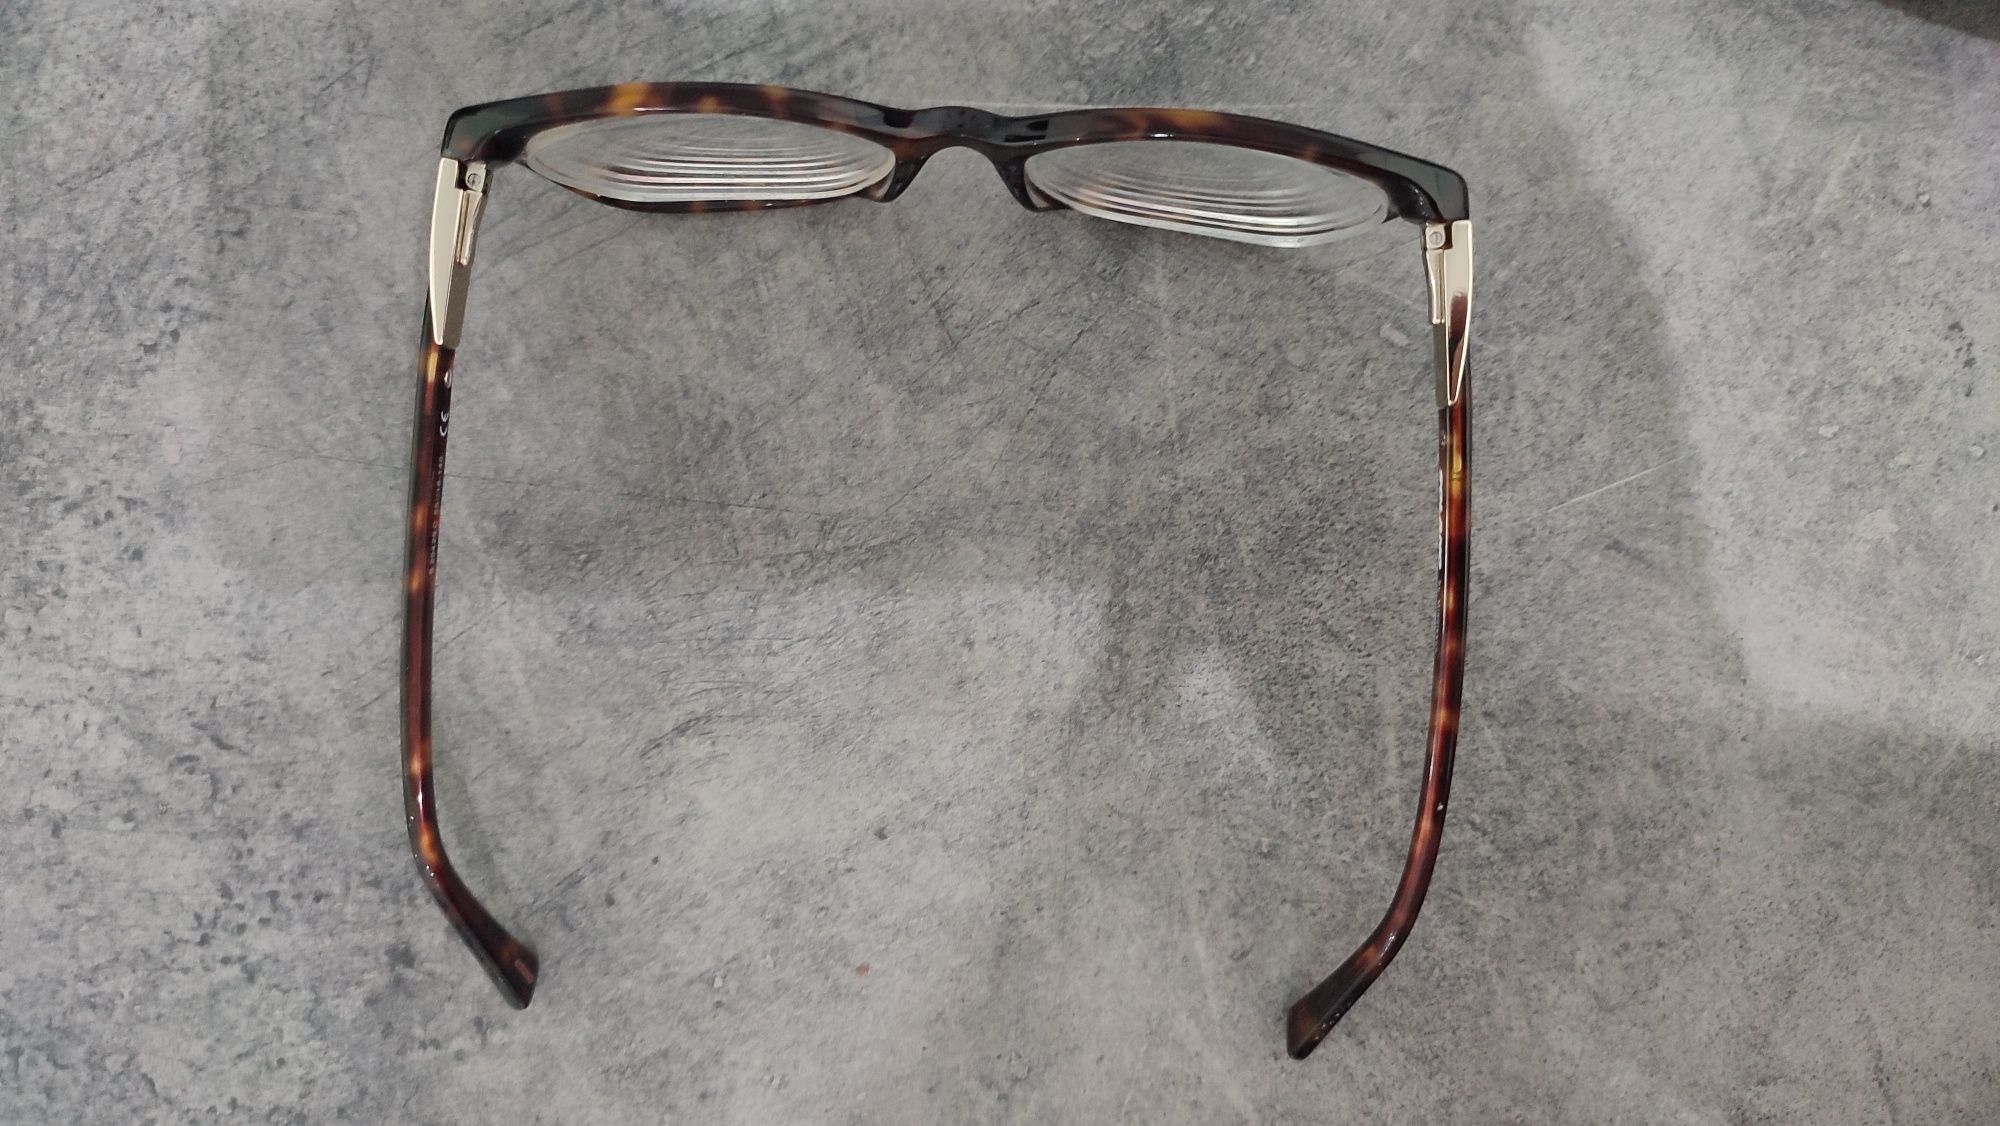 Oprawki okulary korekcyjne Solano damskie